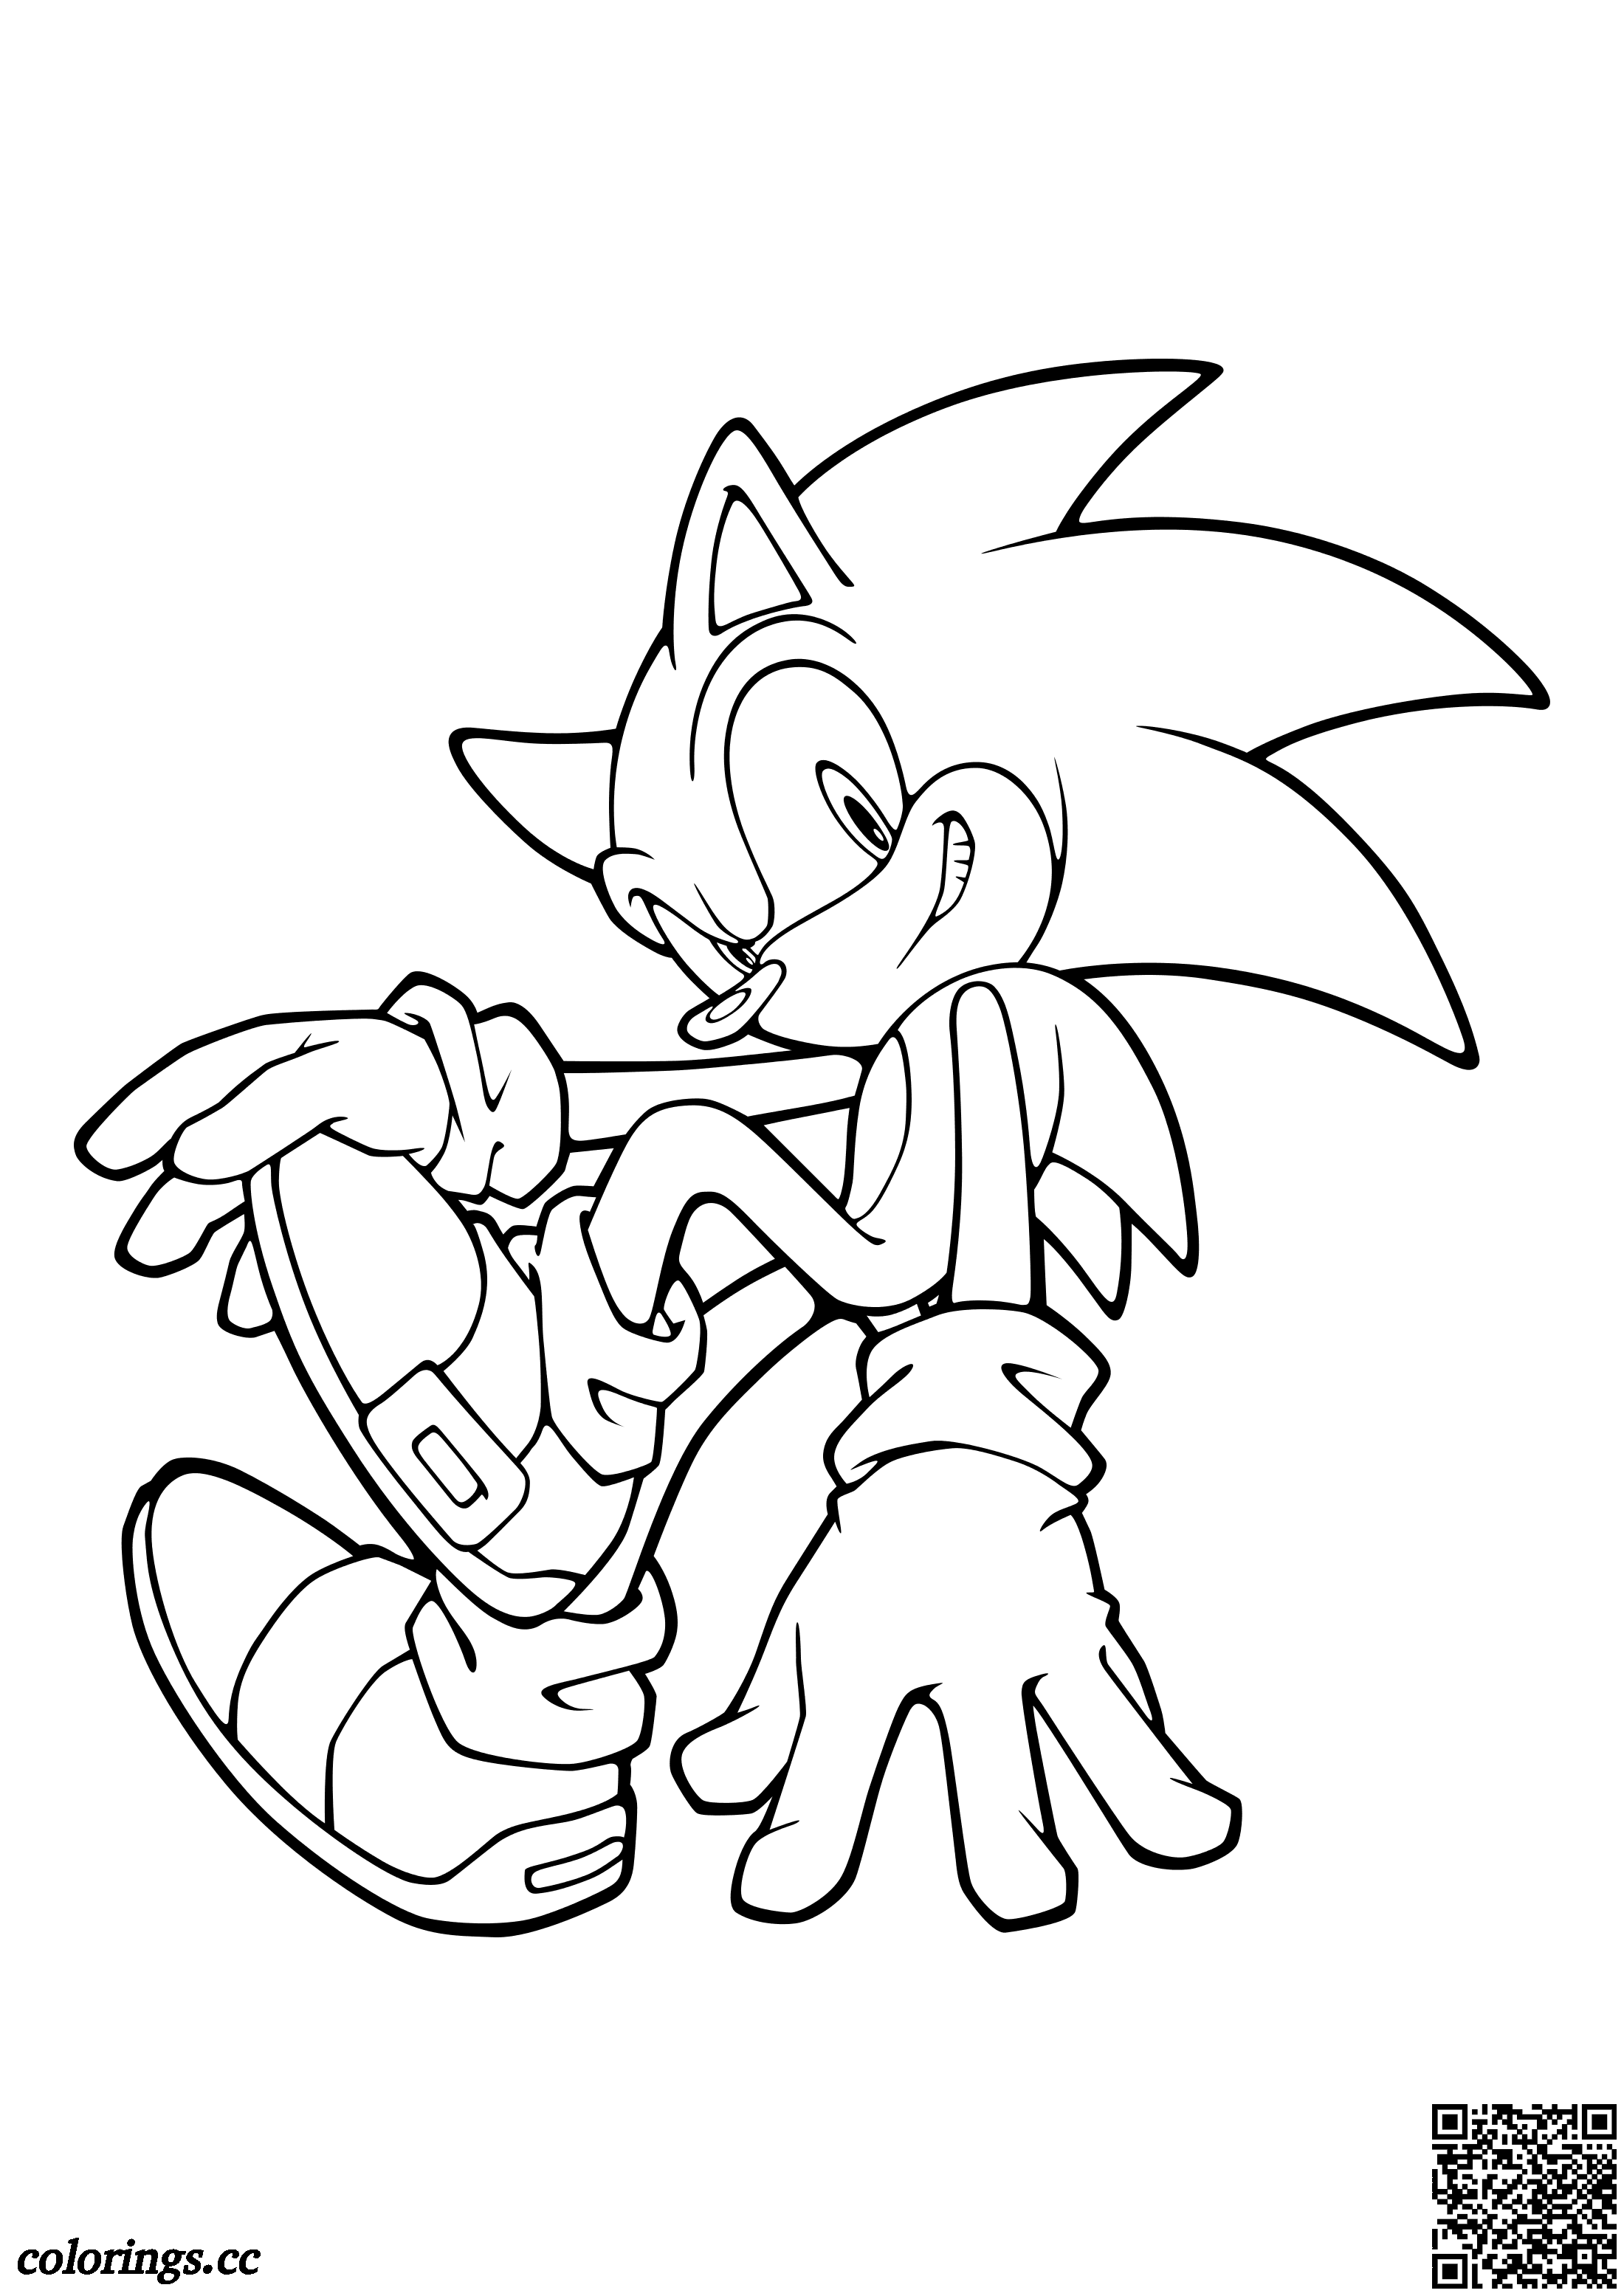 Shadow the Hedgehog geralmente age sozinho livro de colorir, Sonic O ouriço  livro de colorir 